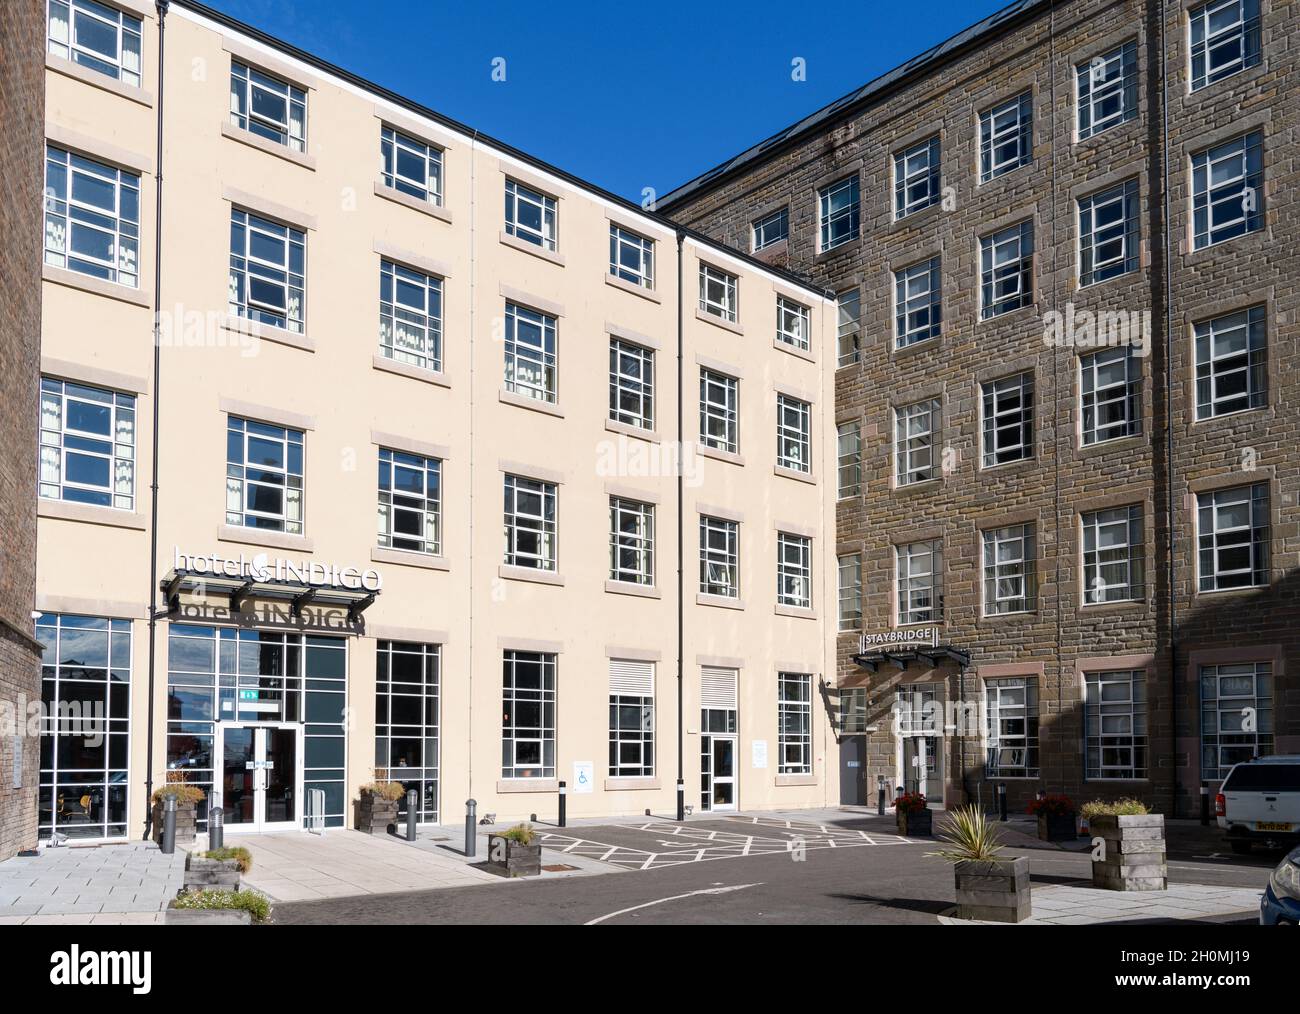 Das Hotel Indigo und das Staybridge Suites in einer alten Jutemühle, Dundee, Schottland, Großbritannien Stockfoto